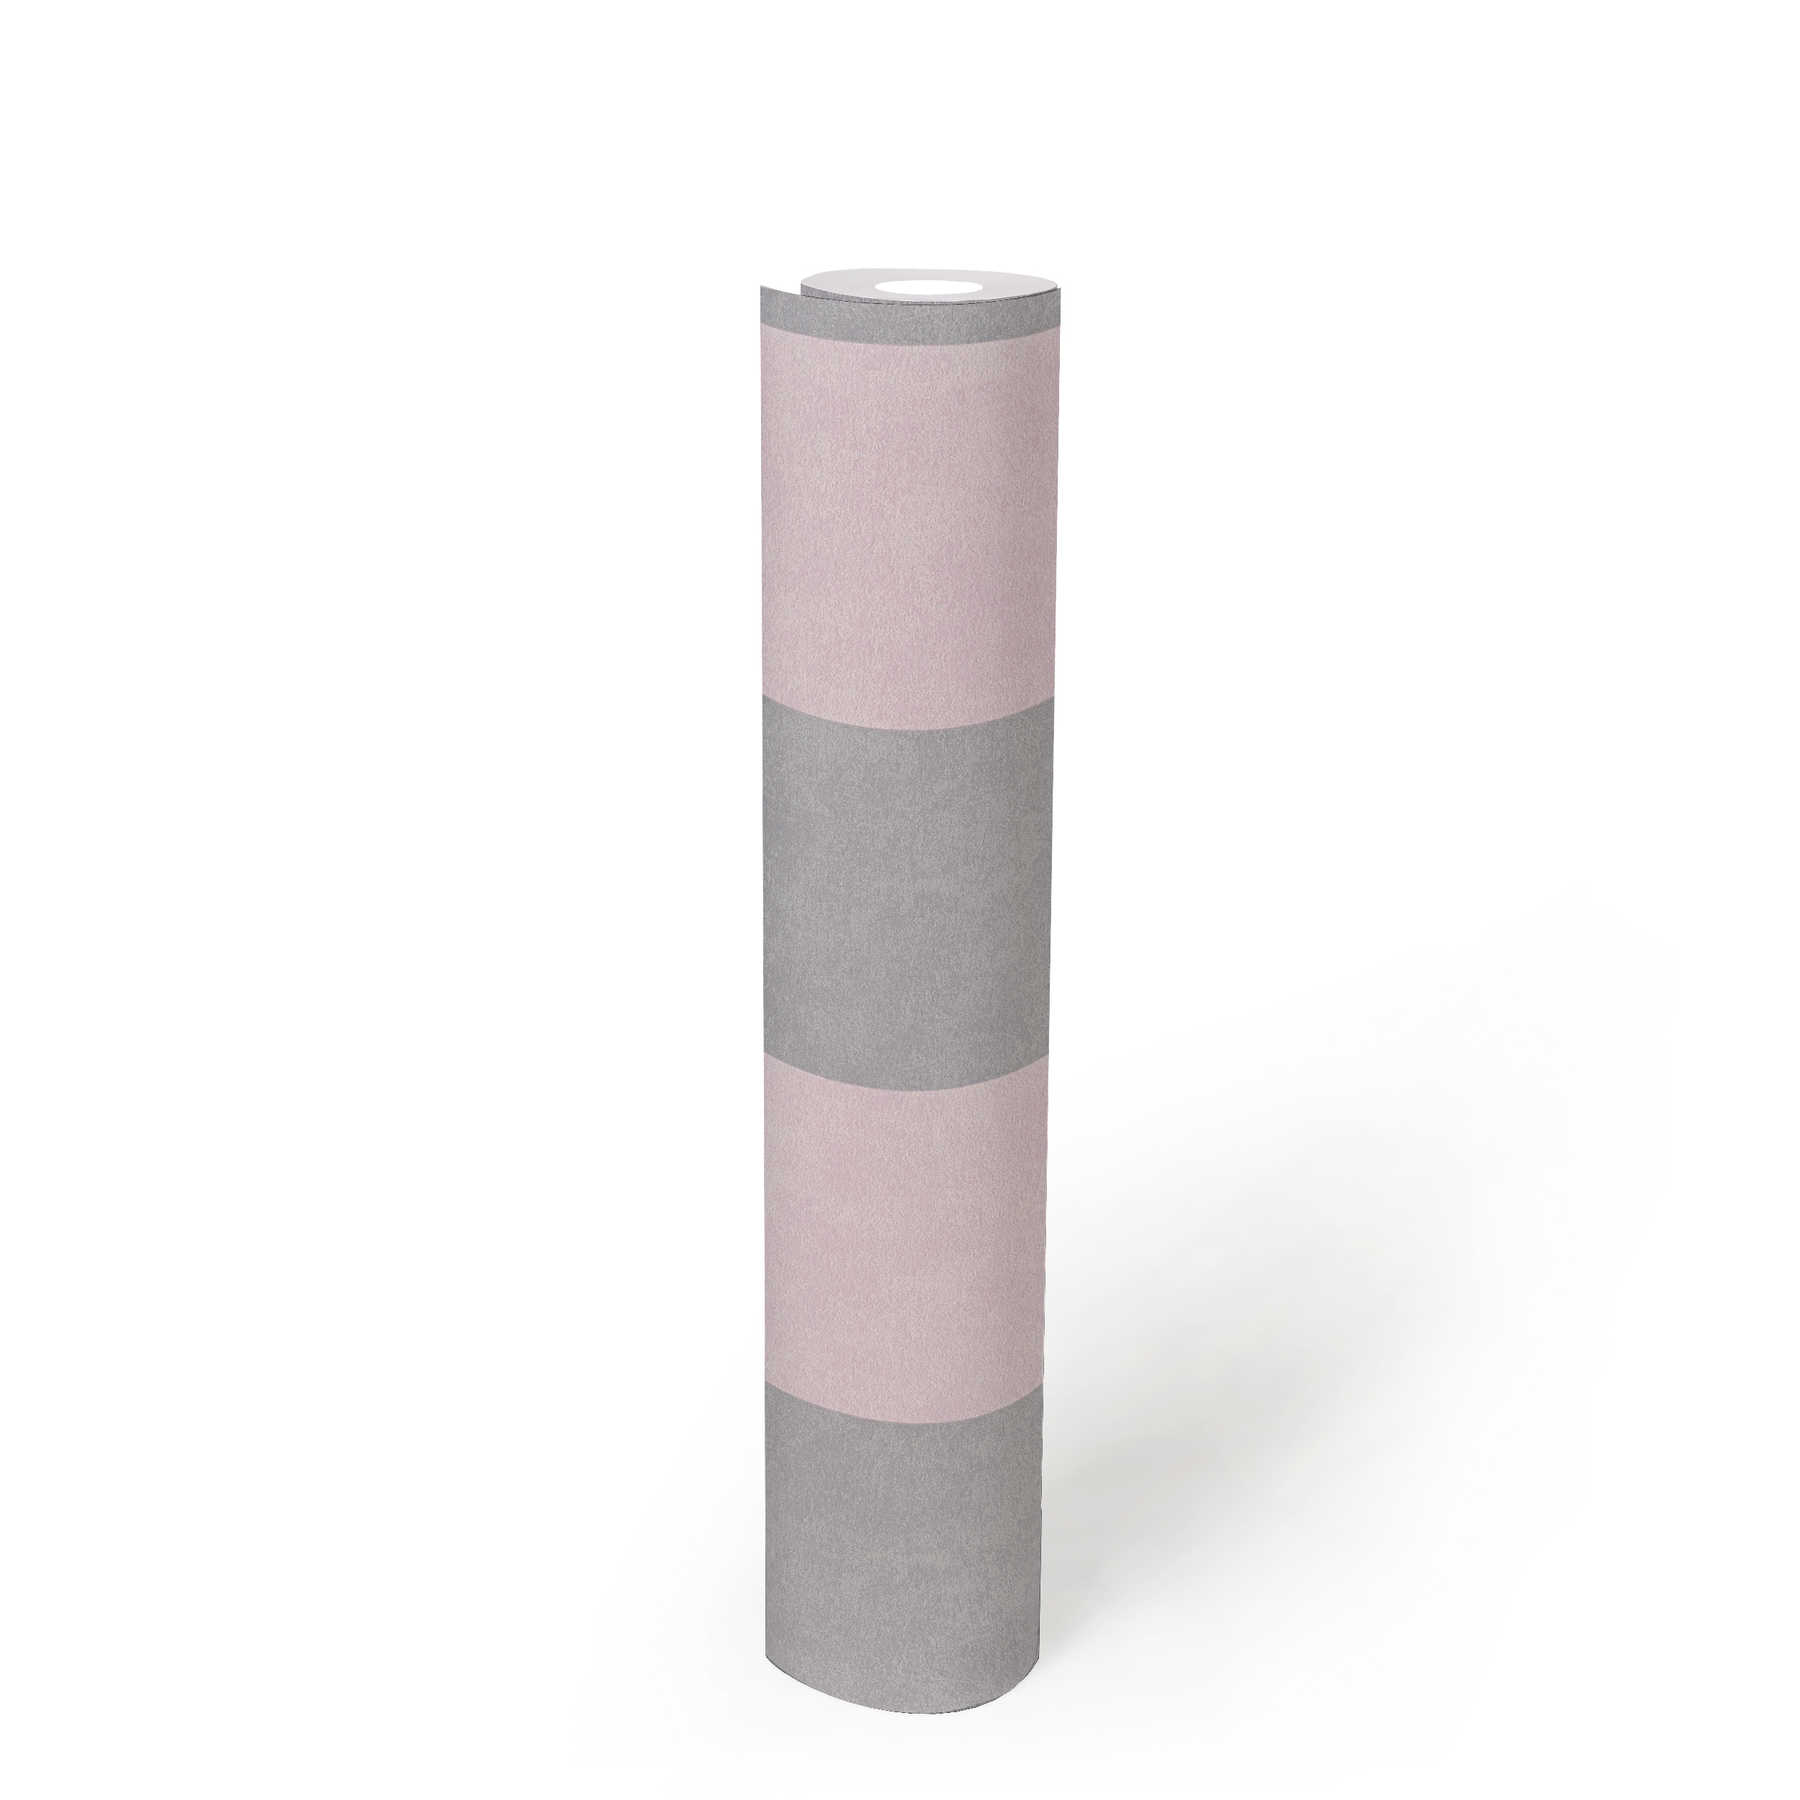             Gestreept behang met textuurpatroon - grijs, roze
        